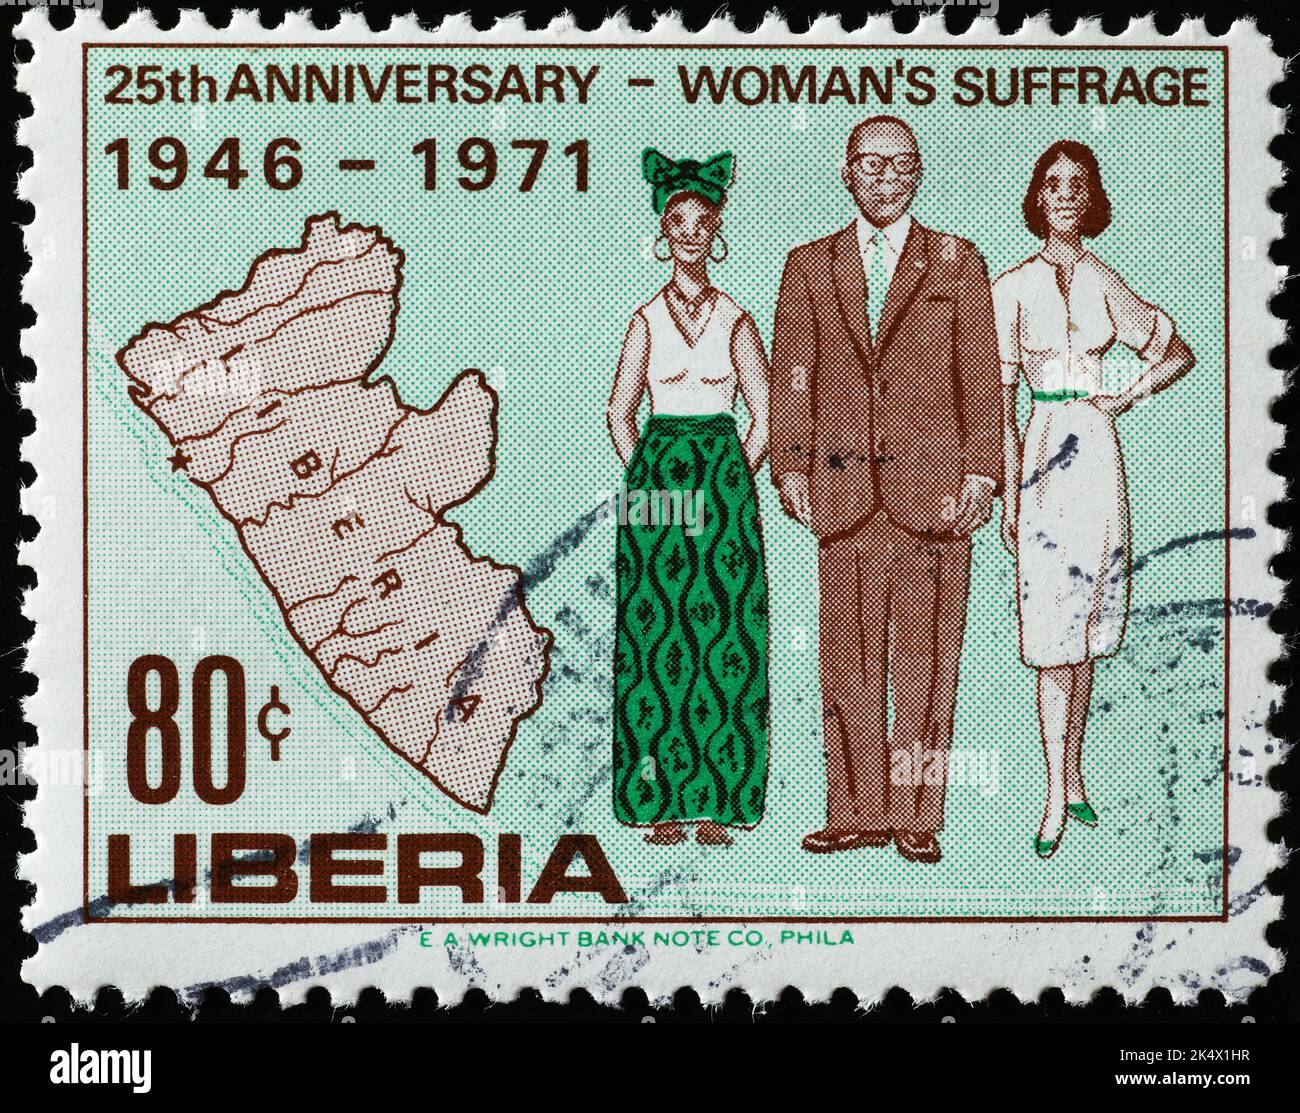 Das Frauenwahlrecht wurde auf der Briefmarke von Liberia gefeiert Stockfoto